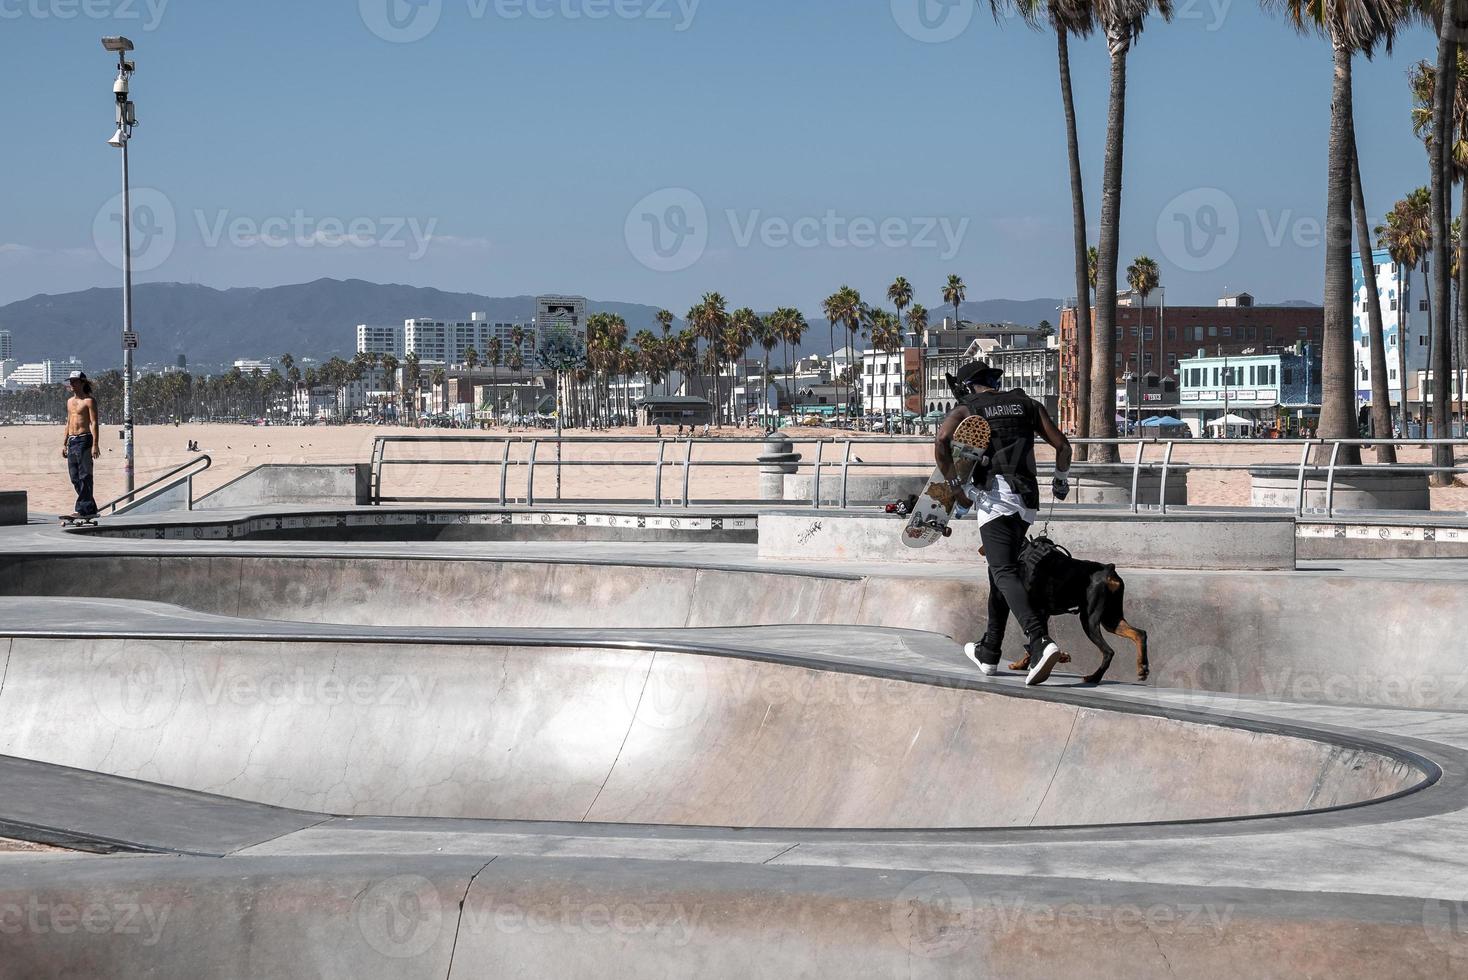 posteriore Visualizza di uomo con skateboard e cane in esecuzione su rampa a Skate park foto